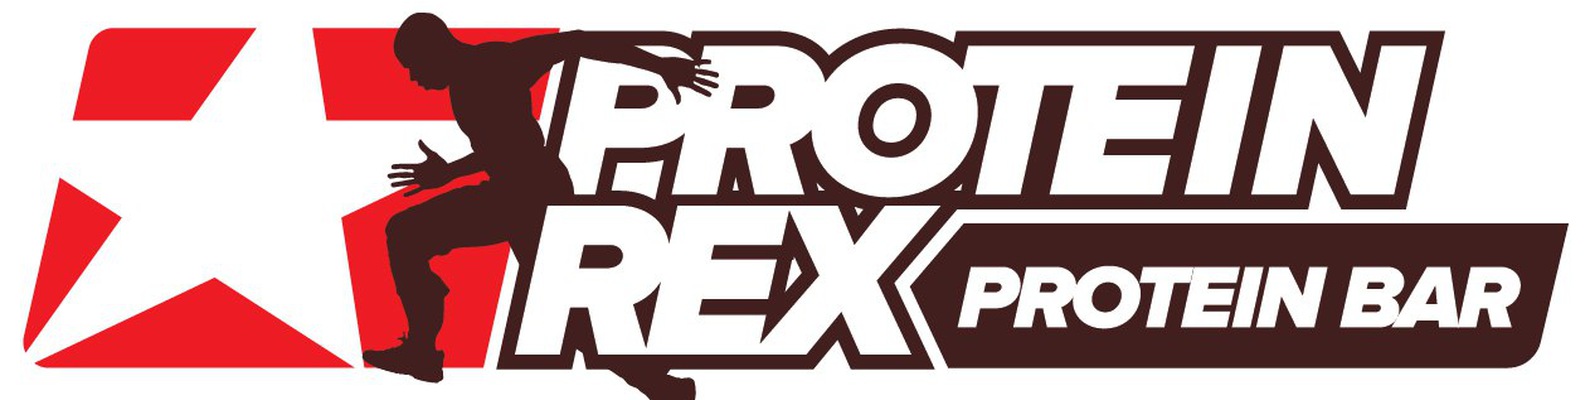 Proteinrex